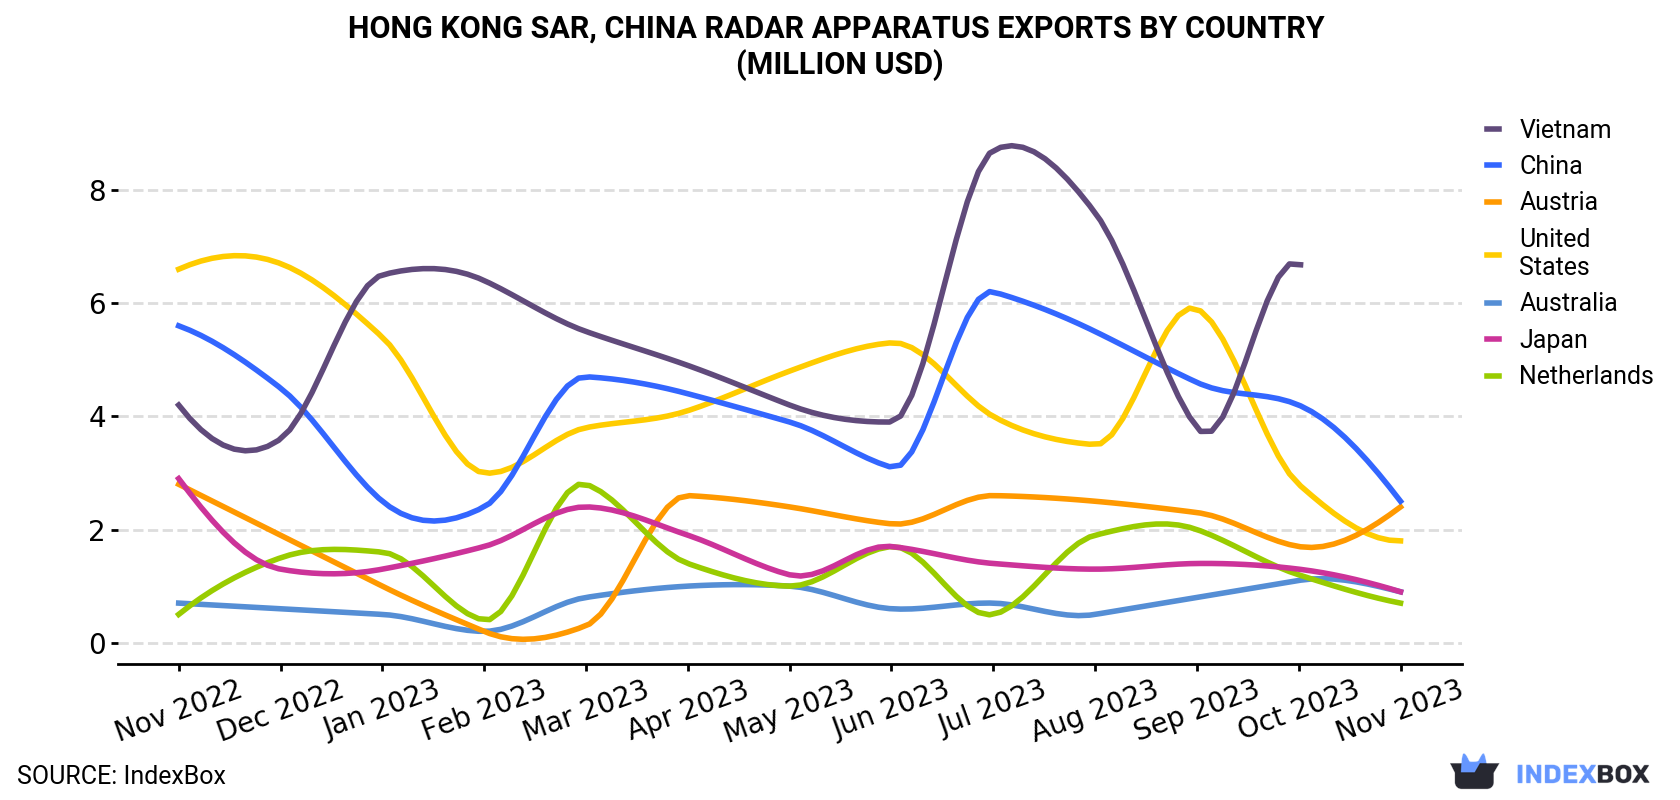 Hong Kong Radar Apparatus Exports By Country (Million USD)